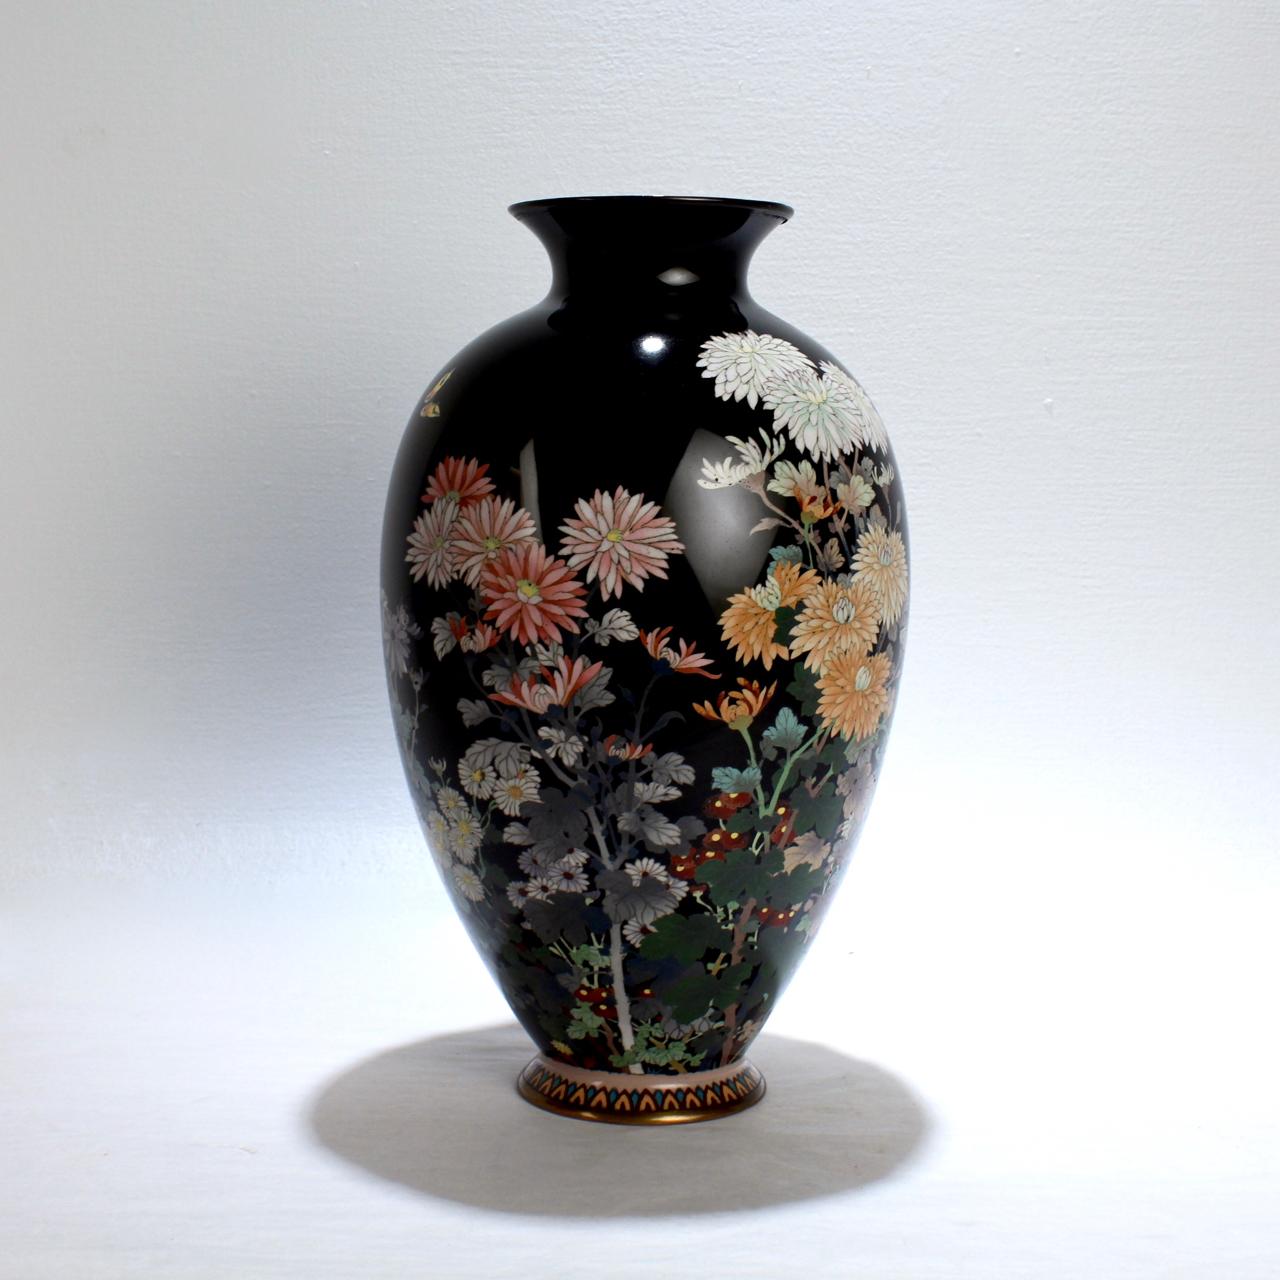 Cloissoné Antique Meiji Japanese Cloisonné Black Enamel Vase with Flowers and Butterflies